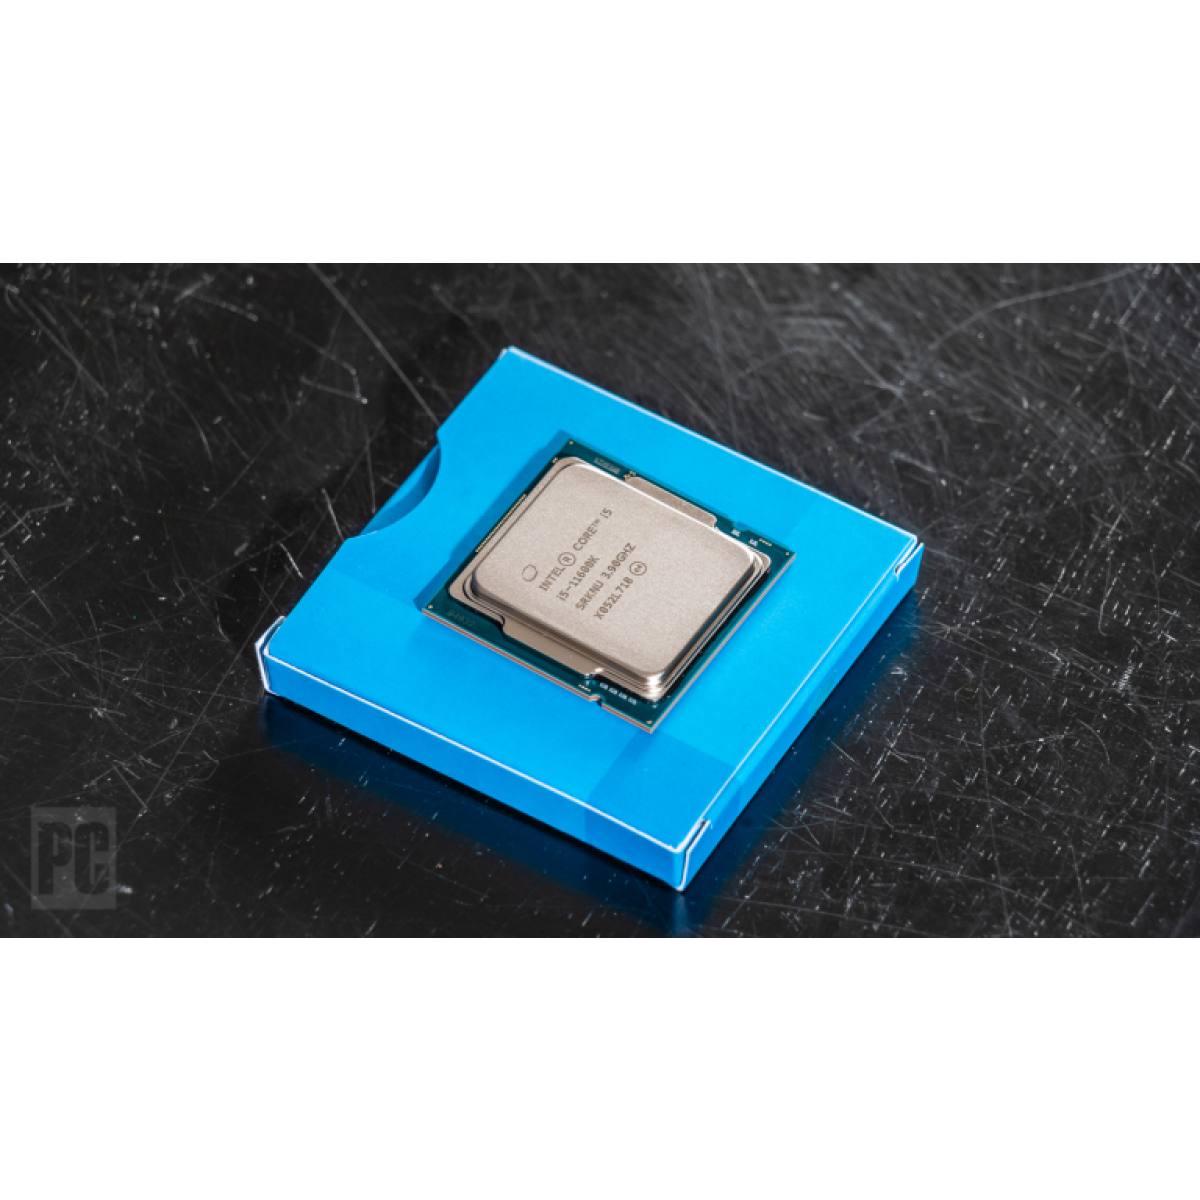 CPU Intel Core i5-11600K 3.9GHz turbo up to 4.9Ghz | 6 nhân 12 luồng | 12MB Cache, 125W